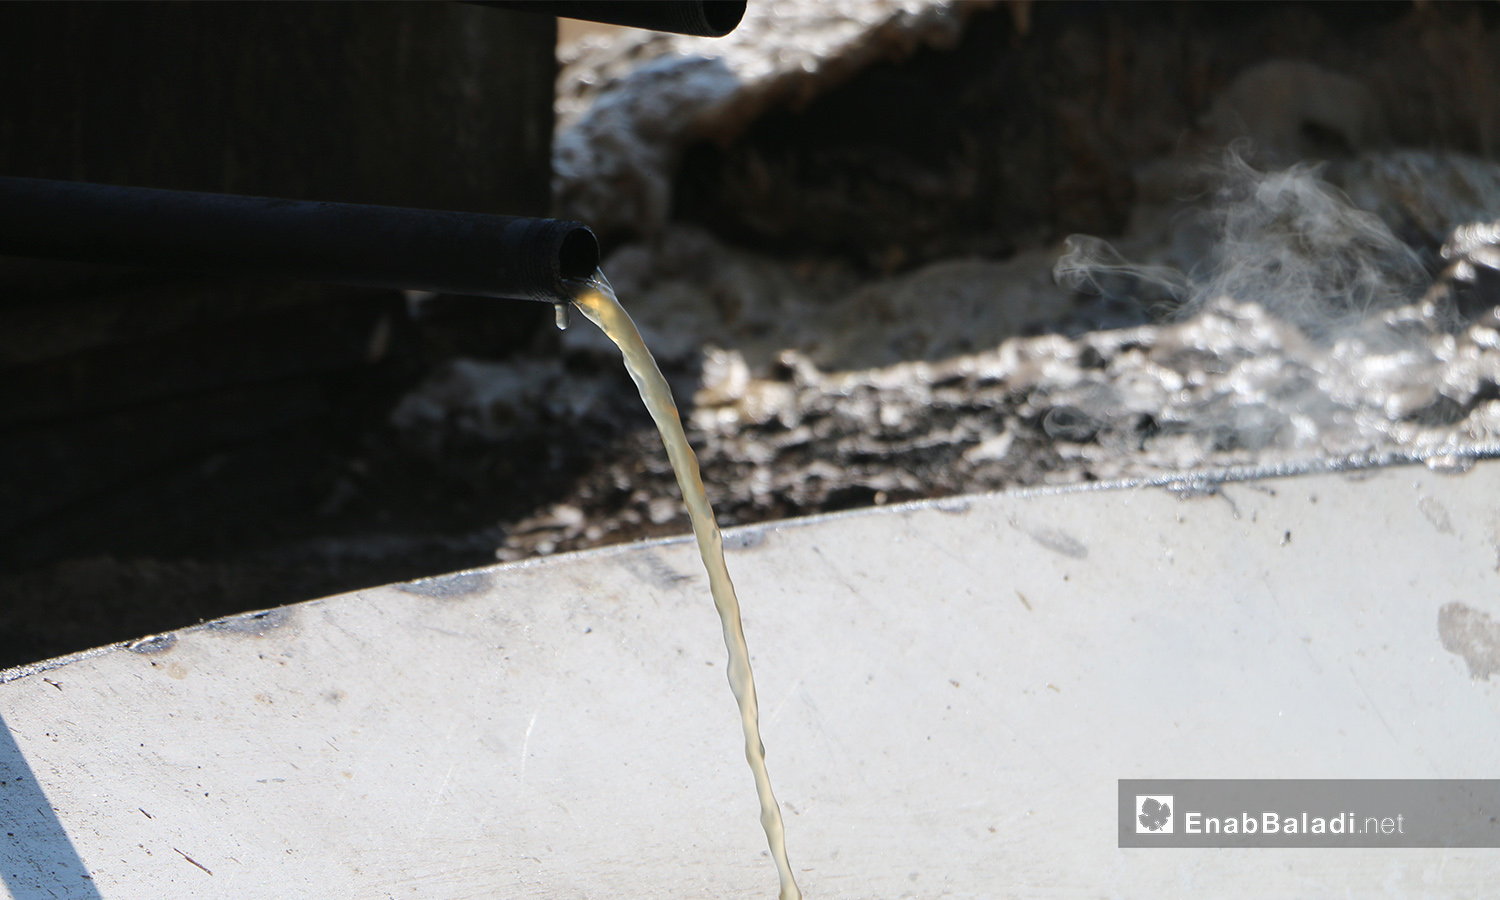 تجهز أحواض غلي العصير بحراقات قوية - 17 أيلول 2020 (عنب بلدي/ عبد السلام مجعان)